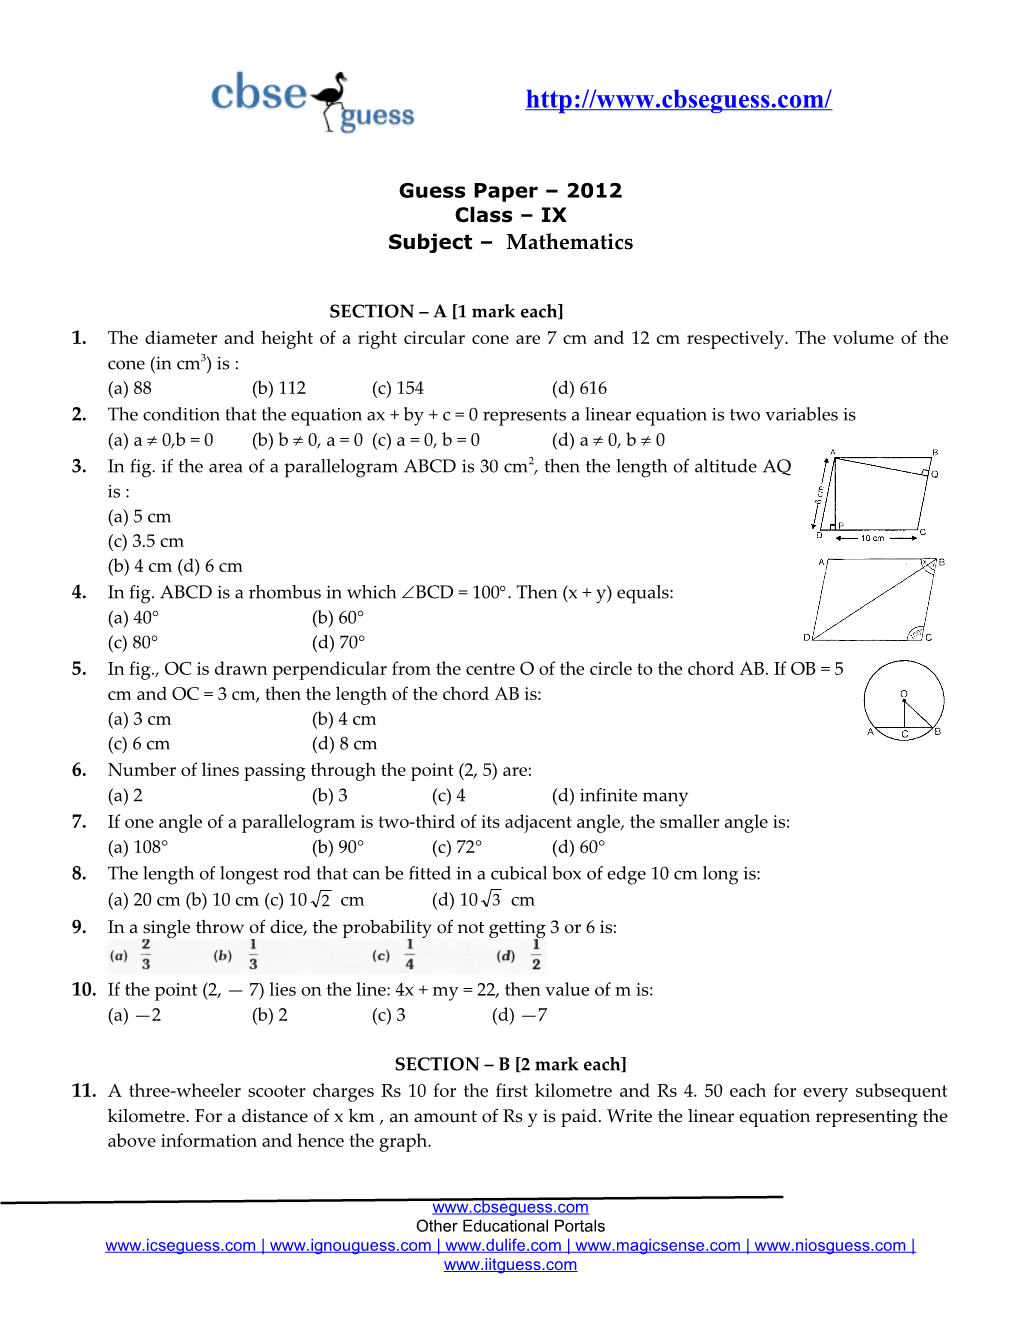 Guess Paper 2012 Class IX Subject Mathematics